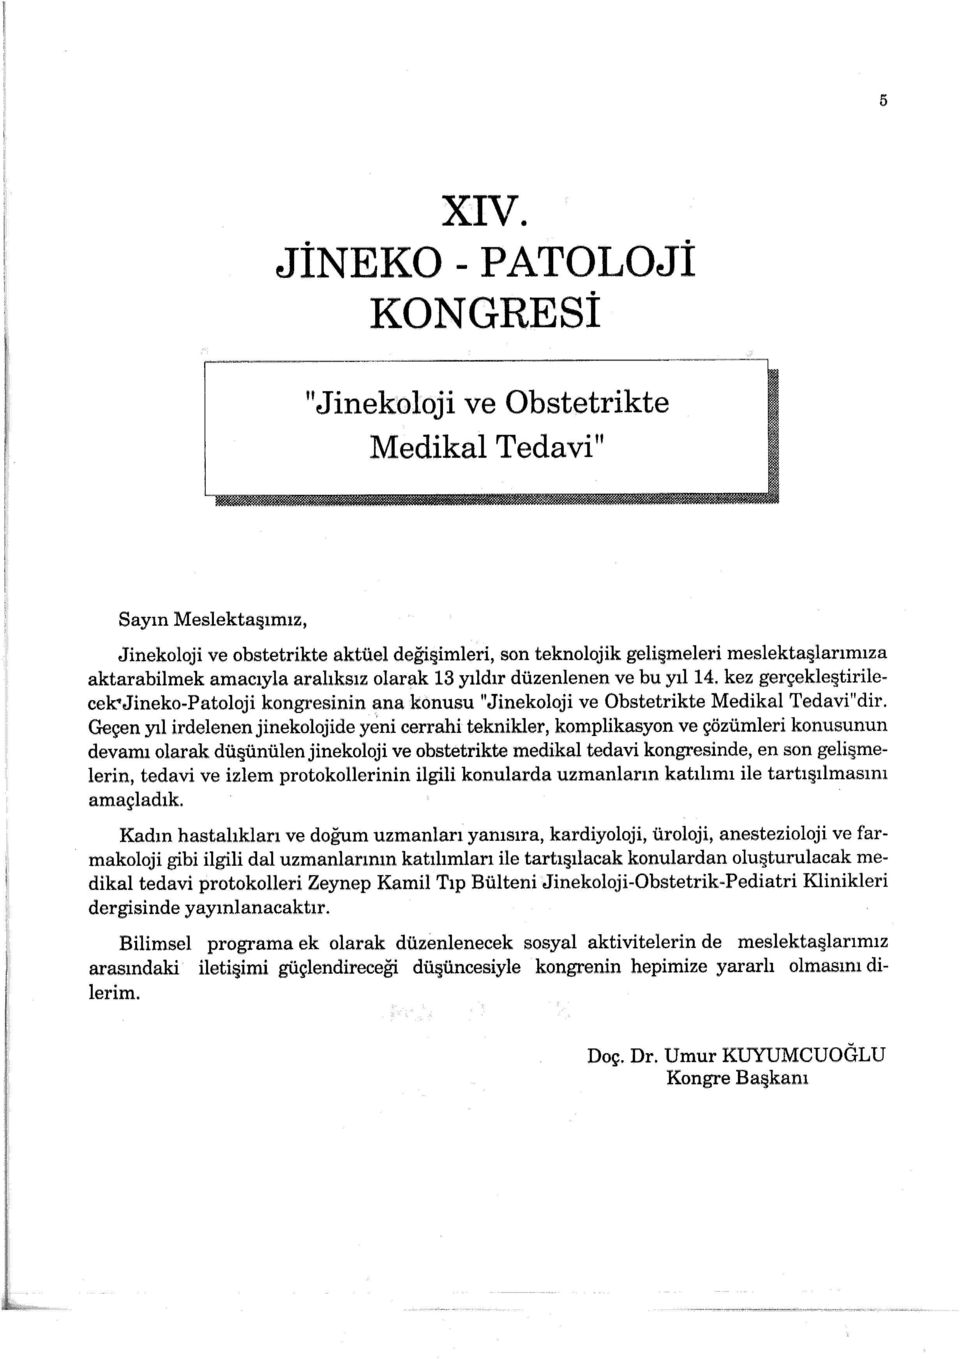 amacıyla aralıksız olarak 13 yıldır düzenlenen ve bu yıl 14. kez gerçekle tirilecek'jineko-patoloji kongresinin ana konusu "Jinekoloji ve Obstetrikte Medikal Tedavi"dir.